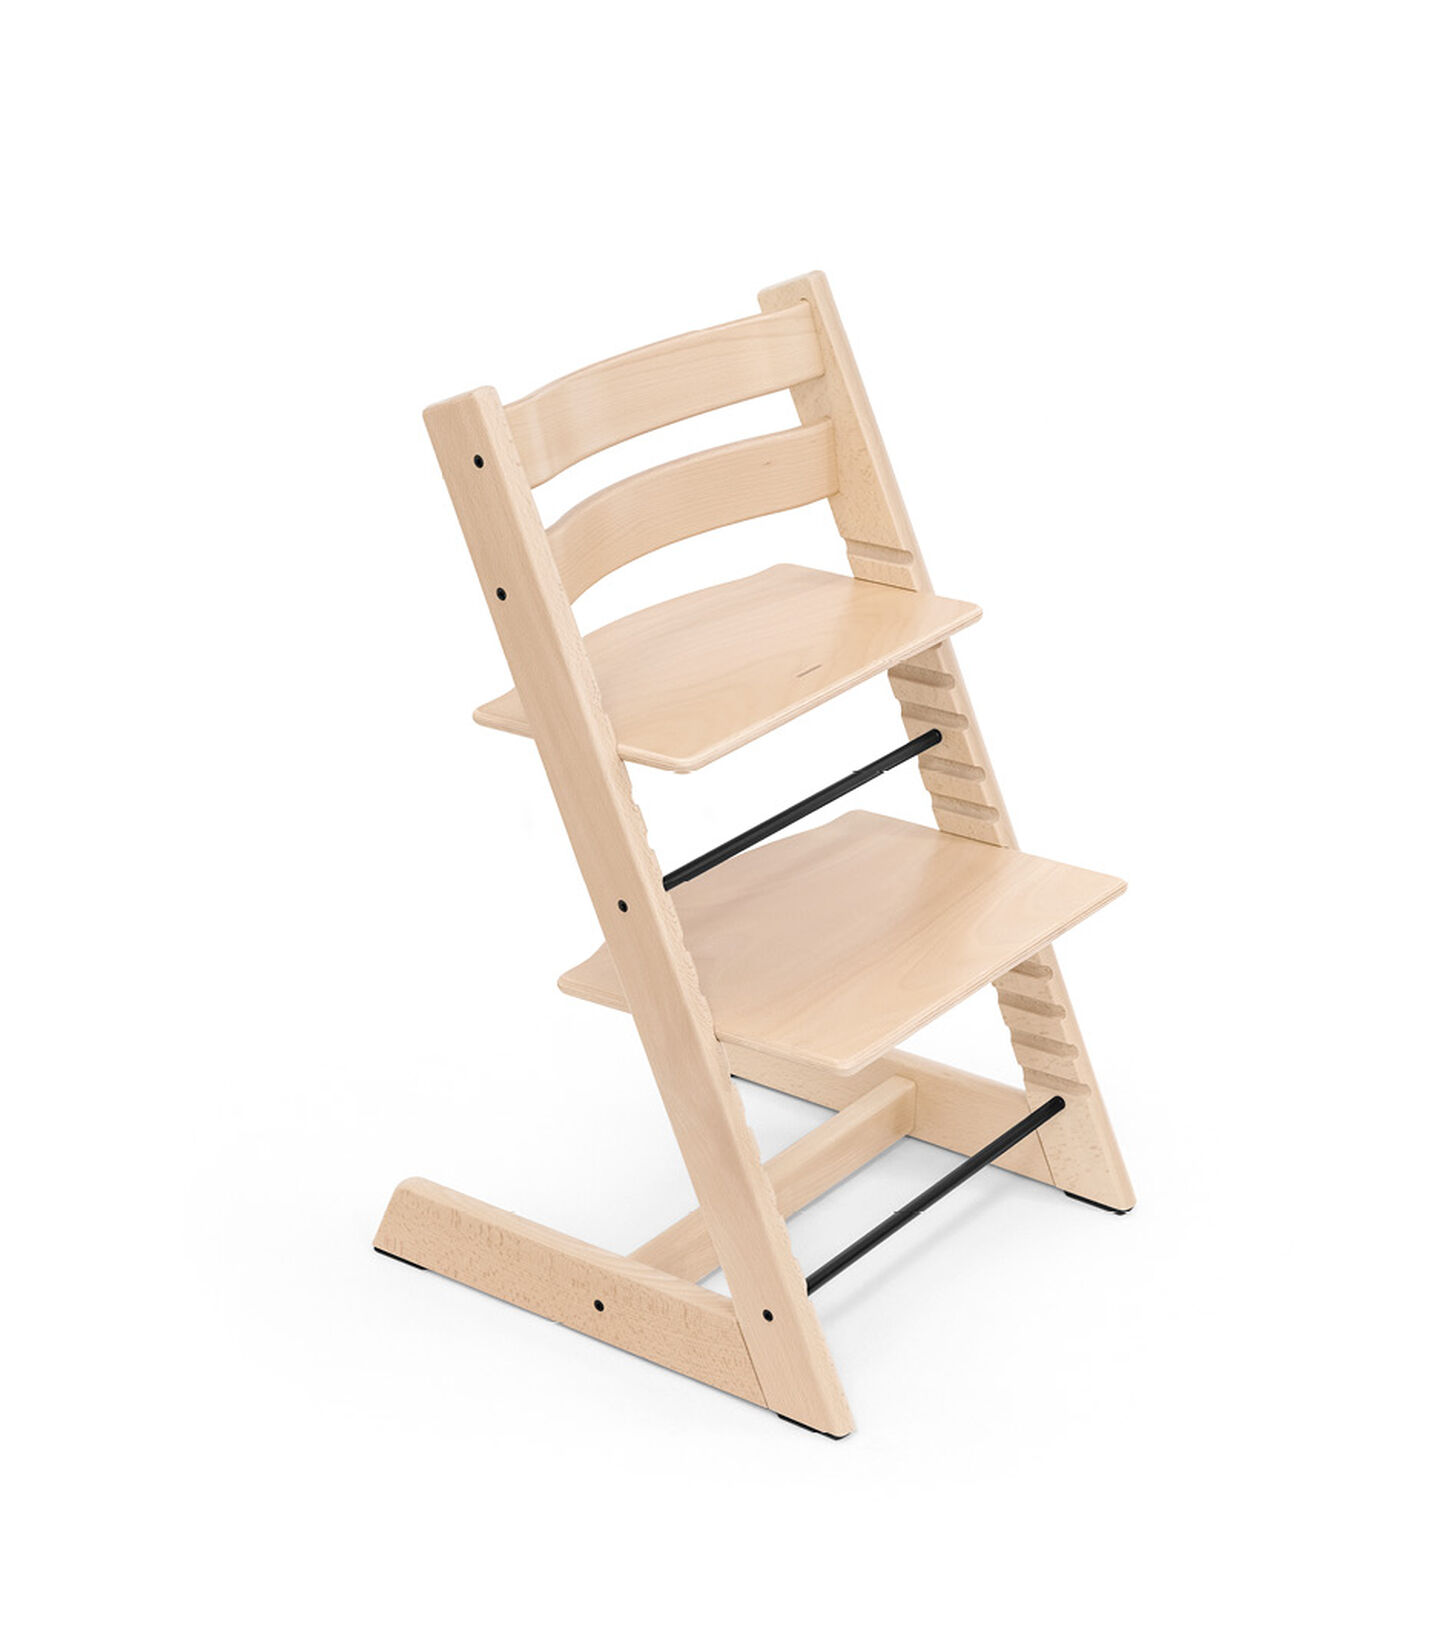 Lyrisch herinneringen molecuul Kinderstoel van de Scandinavische ontwerper Peter Opsvik. Een comfortabele  en ergonomische beukenhouten stoel die met je kindje meegroeit vanaf de geb